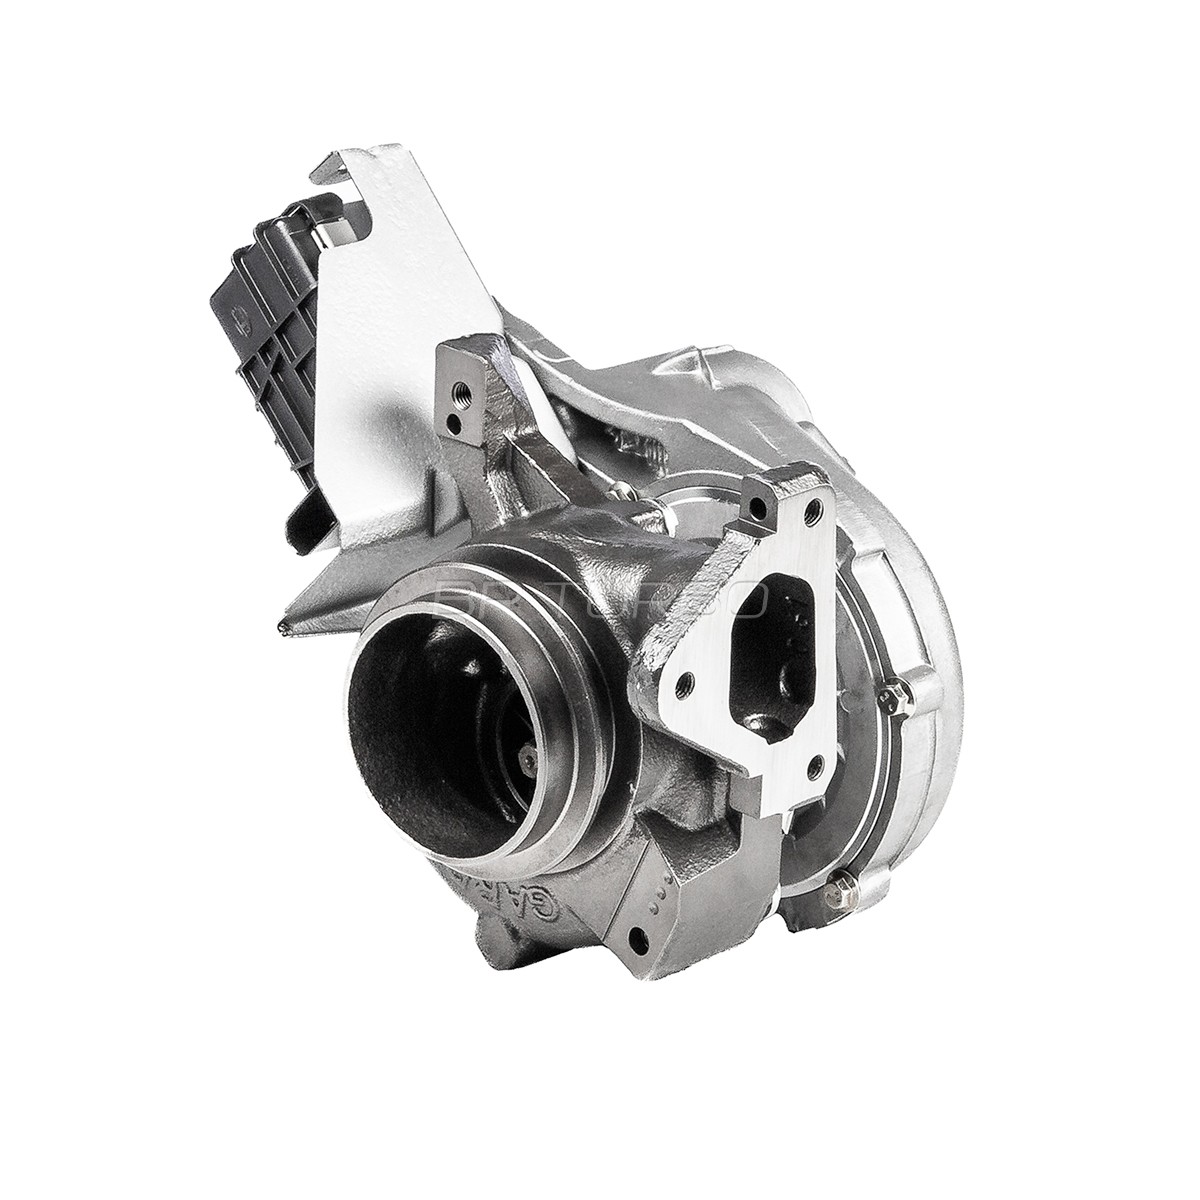 OEM-quality BR Turbo 742693-5001RSG Turbo